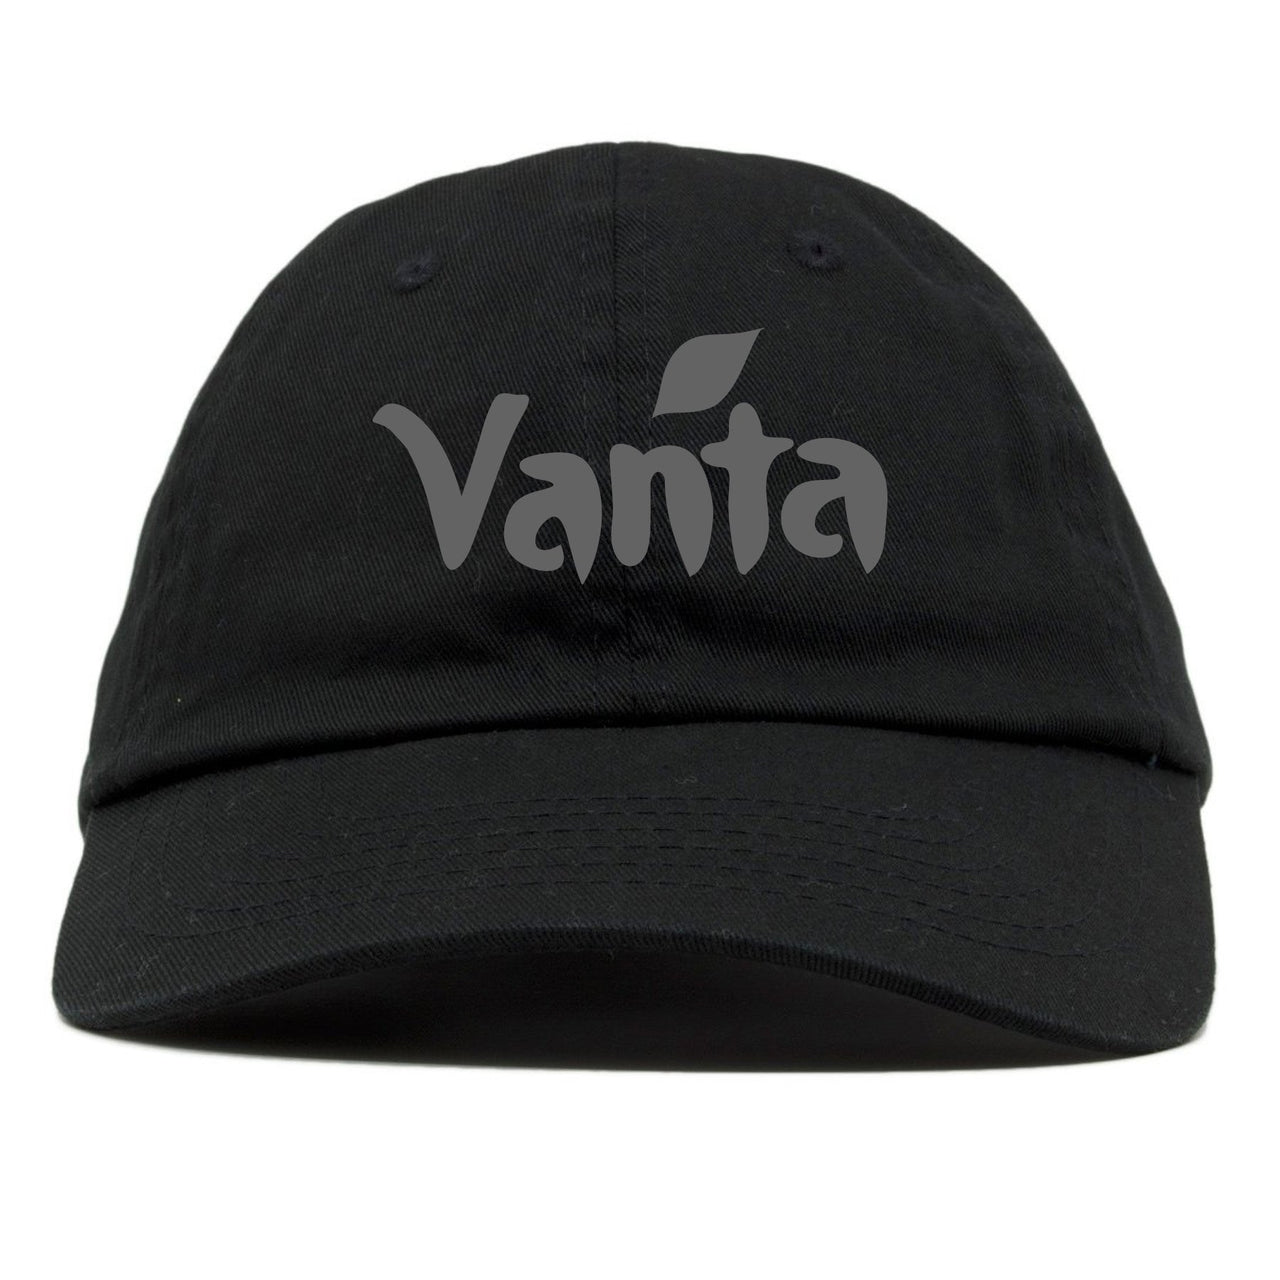 Vanta v2 700s Dad Hat | Vanta, Black